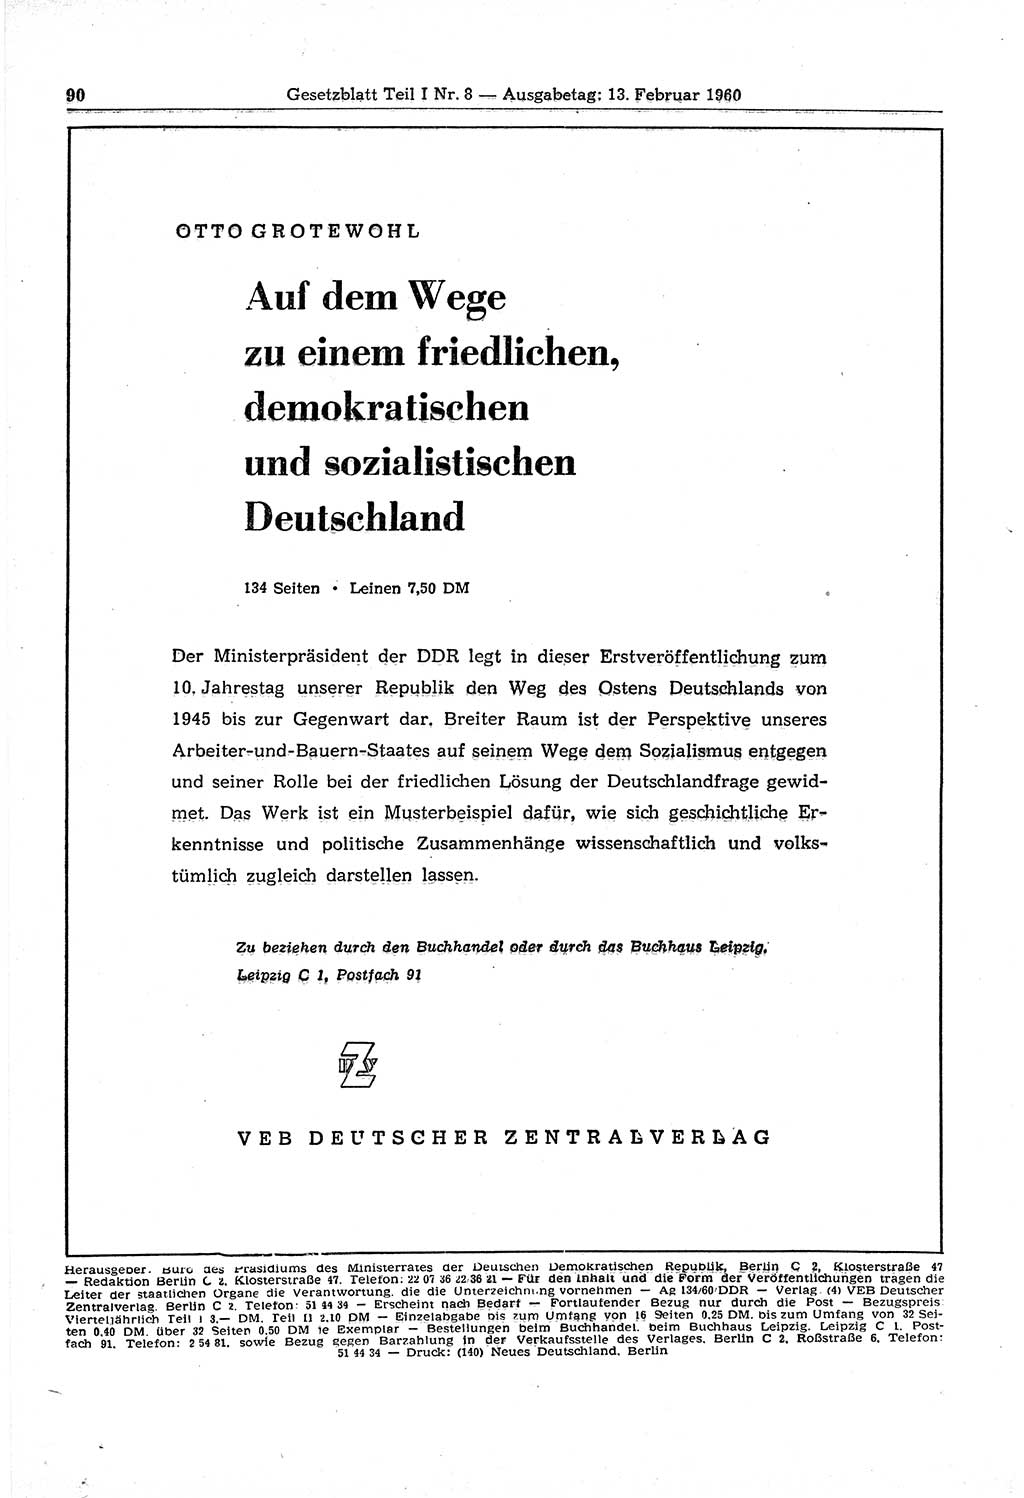 Gesetzblatt (GBl.) der Deutschen Demokratischen Republik (DDR) Teil Ⅰ 1960, Seite 90 (GBl. DDR Ⅰ 1960, S. 90)